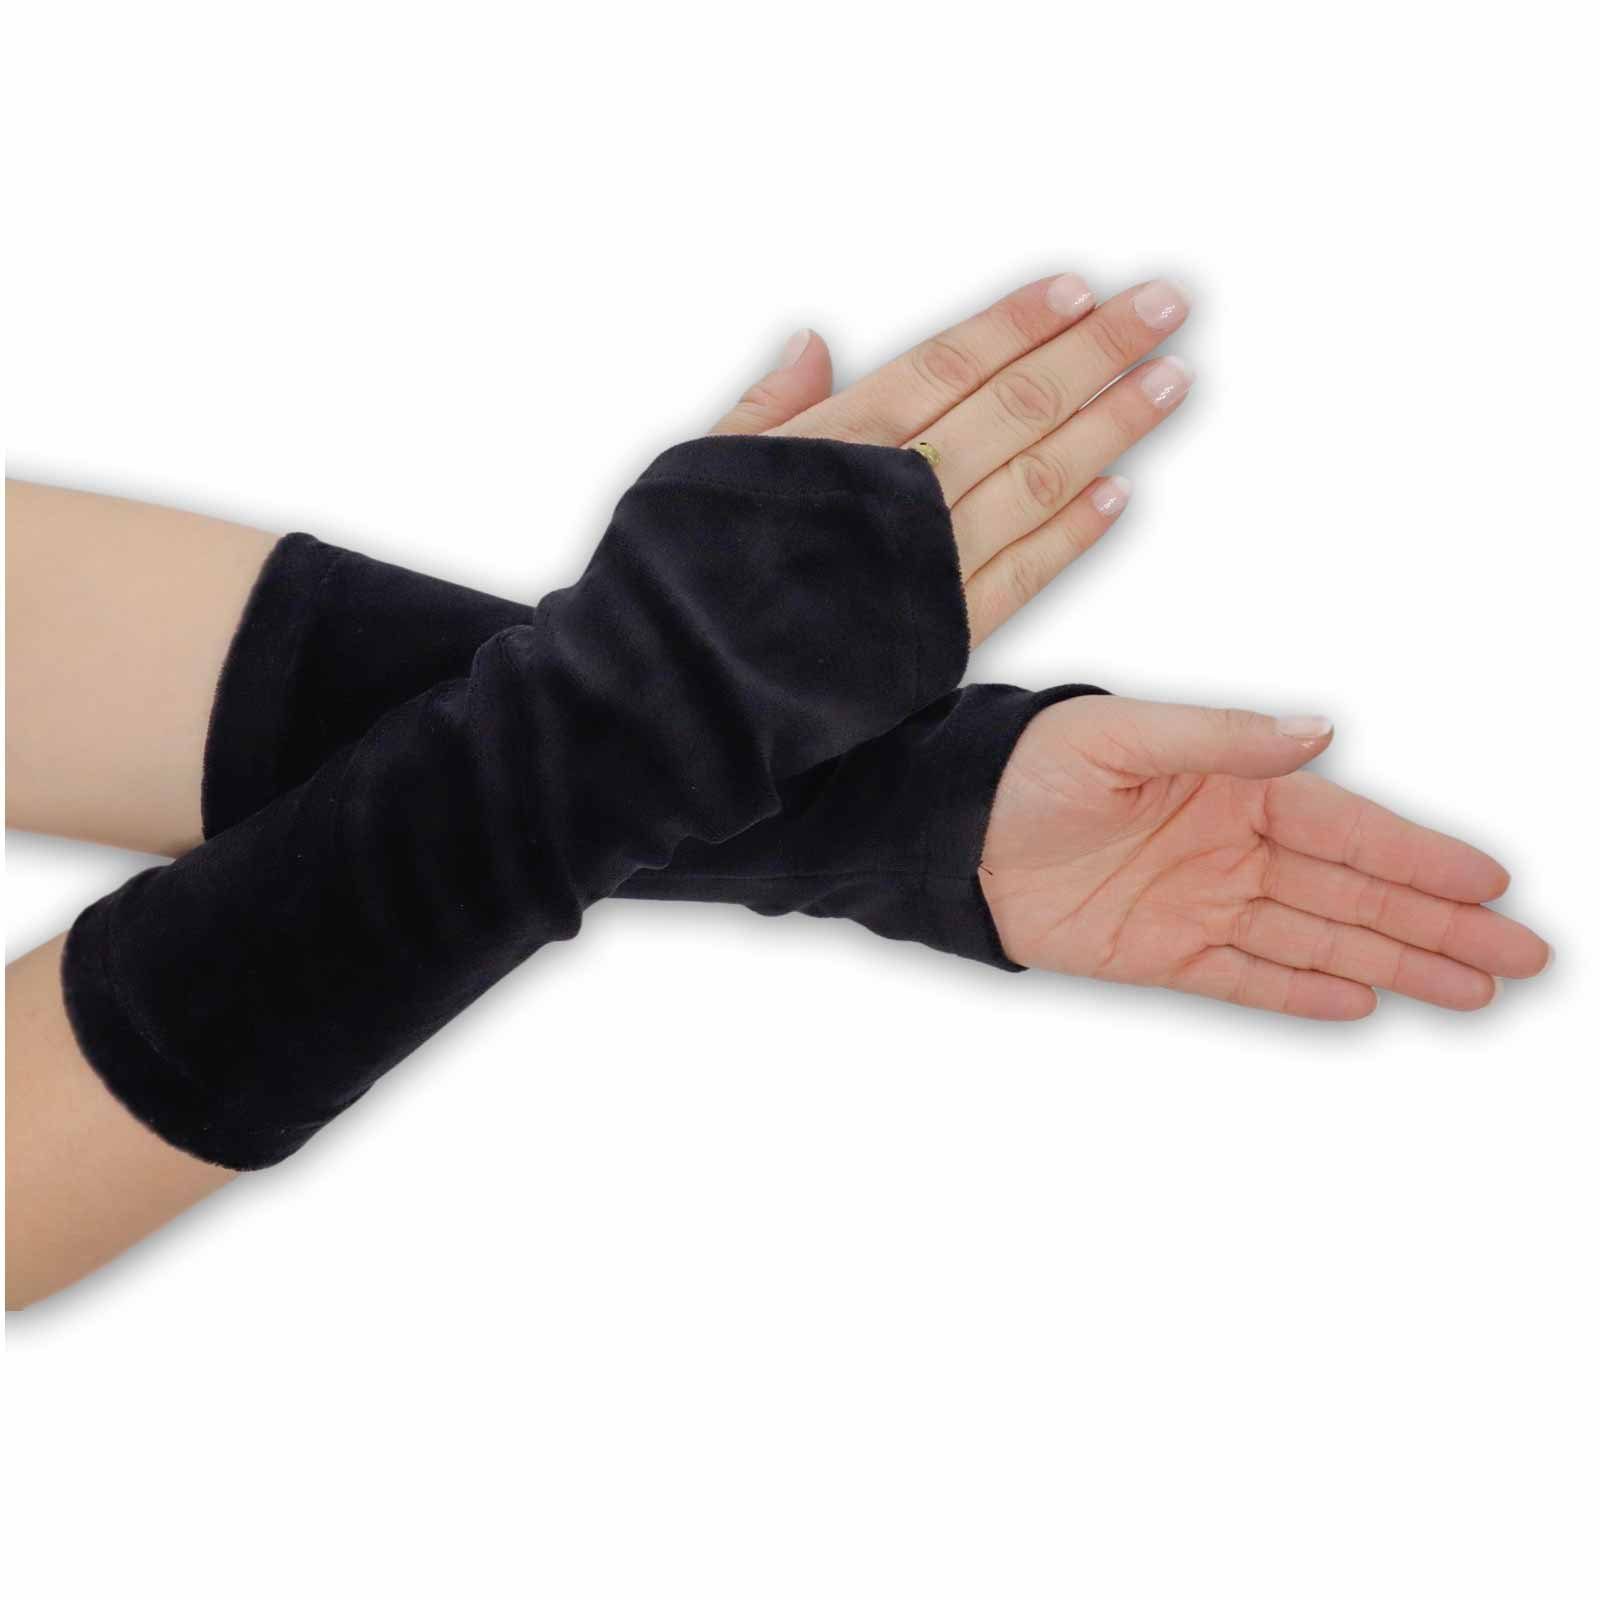 Armstulpen Boho Glöckchen MAGIE Armstulpen Handschuhe UND Schwarz Samt + / Damen Stulpen Black KUNST Handwärmer